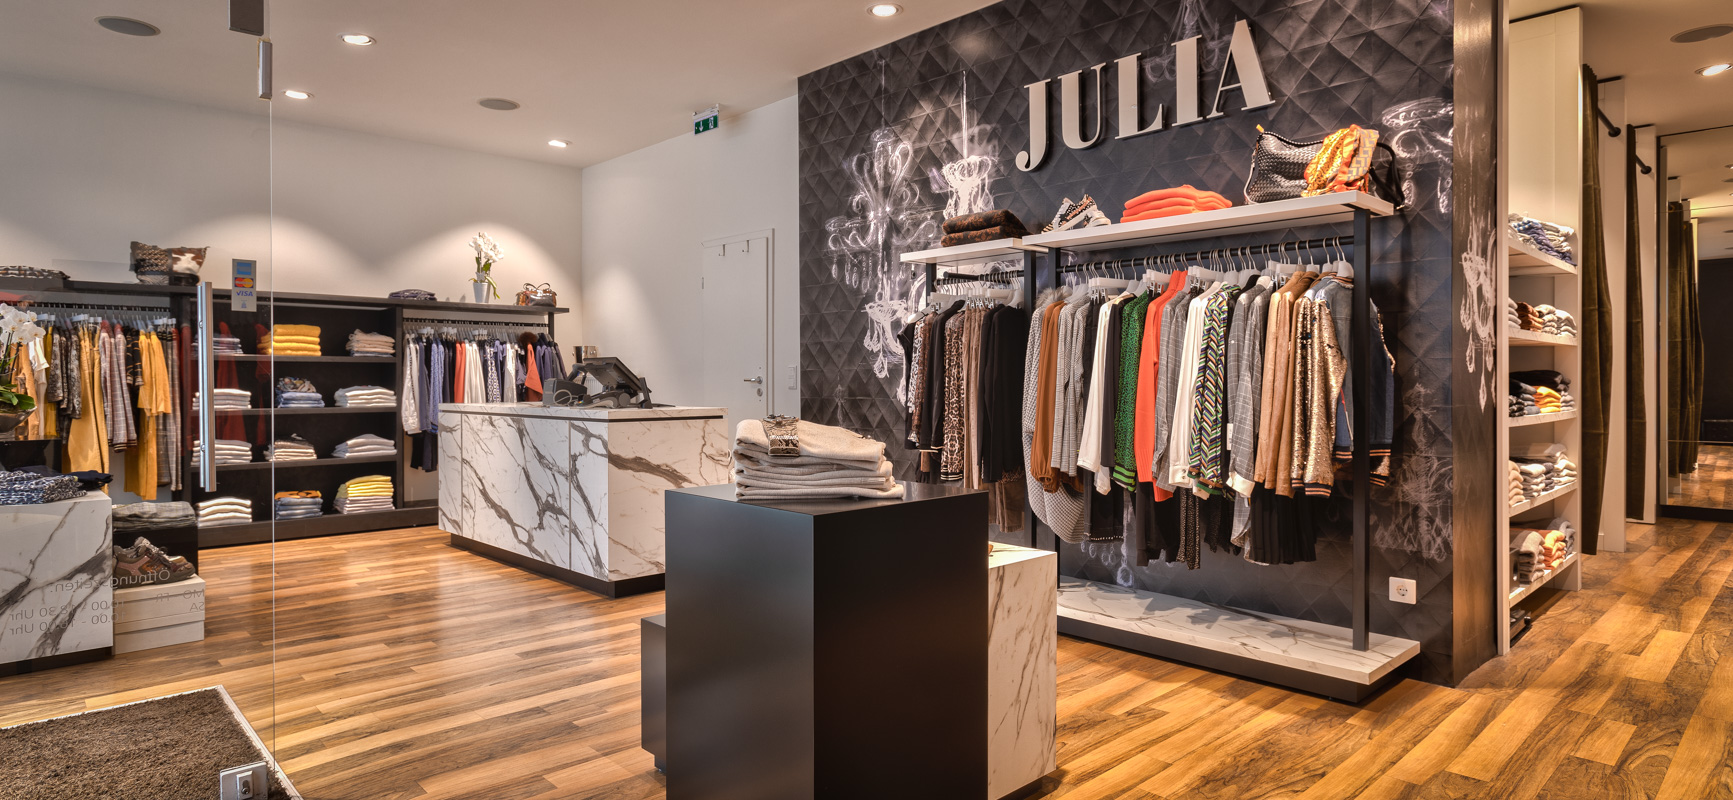 Boutique Julia | Hattingen